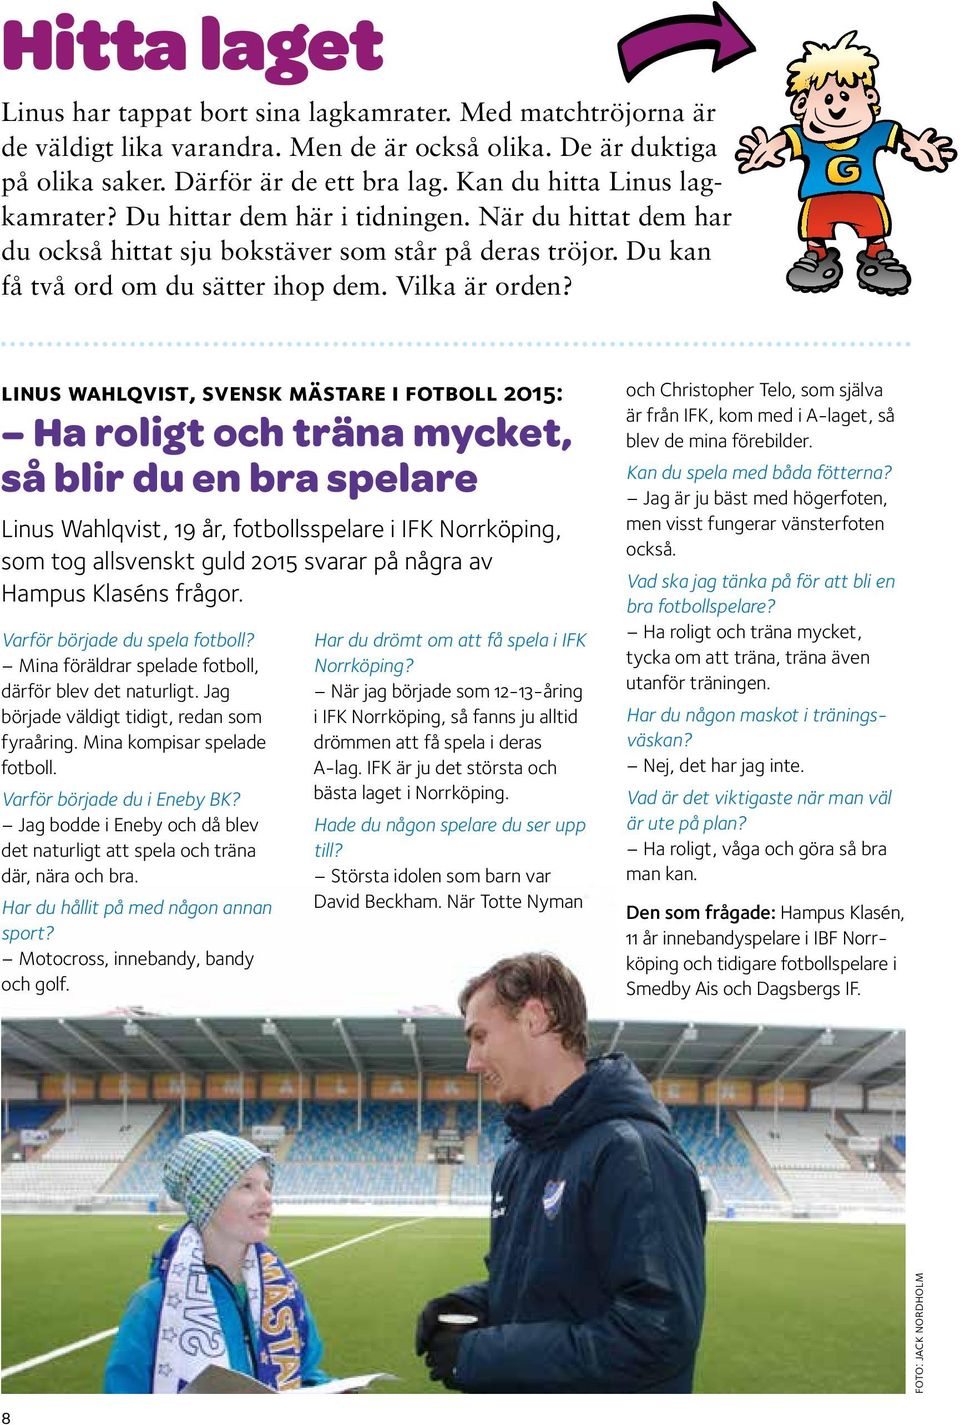 linus wahlqvist, svensk mästare i fotboll 2015: Ha roligt och träna mycket, så blir du en bra spelare Linus Wahlqvist, 19 år, fotbollsspelare i IFK Norrköping, som tog allsvenskt guld 2015 svarar på